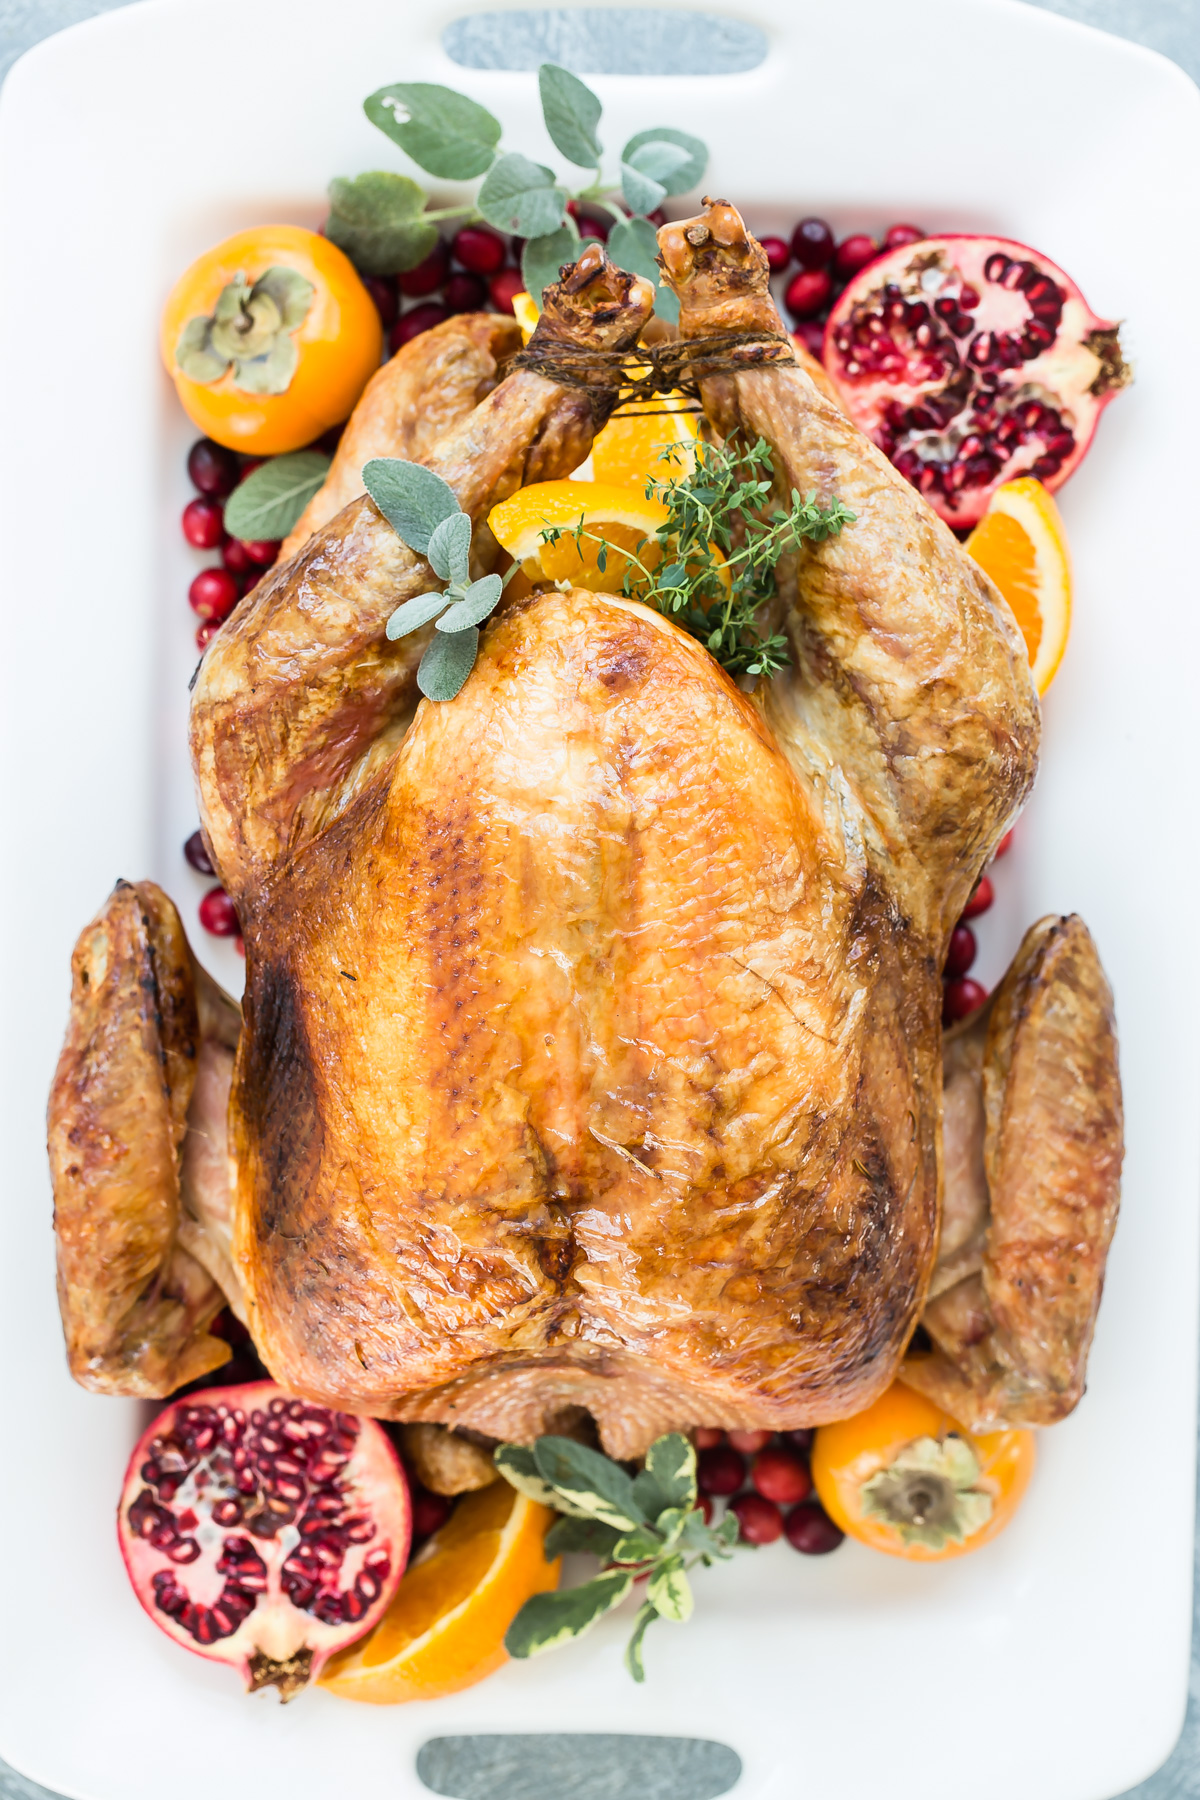 Grilled Turkey on serving platter.